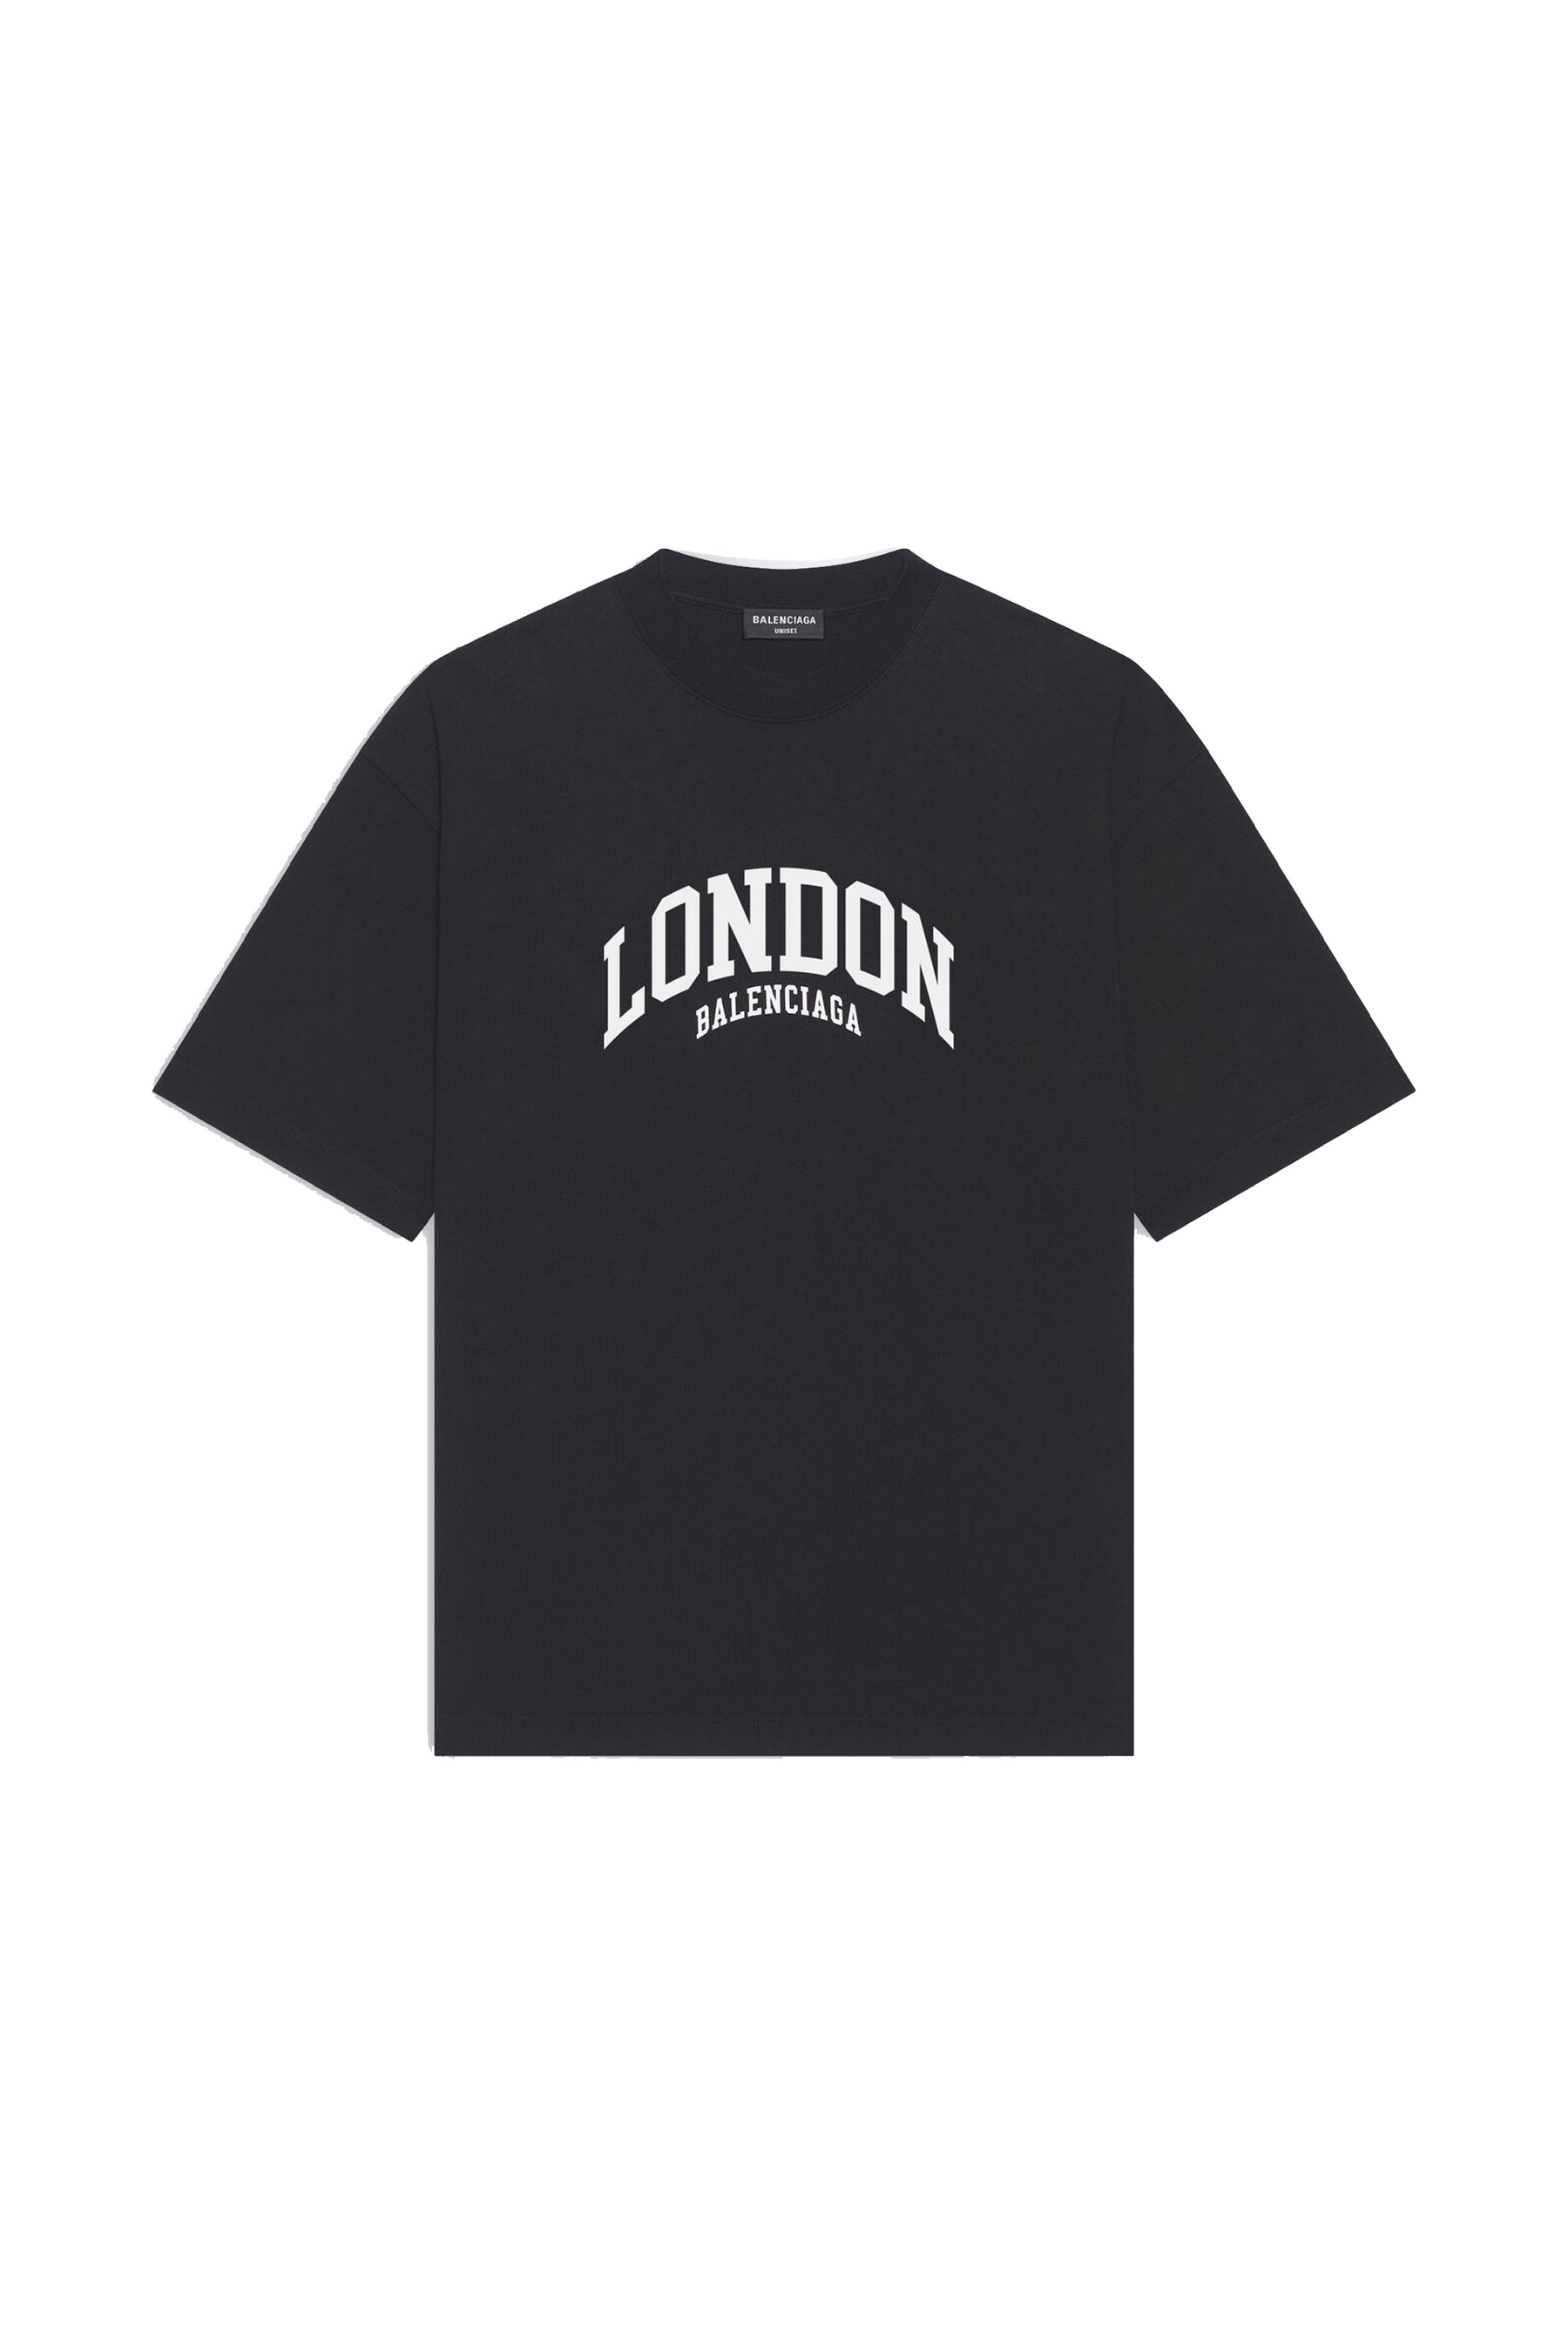 Balenciaga London logo cotton T-shirt